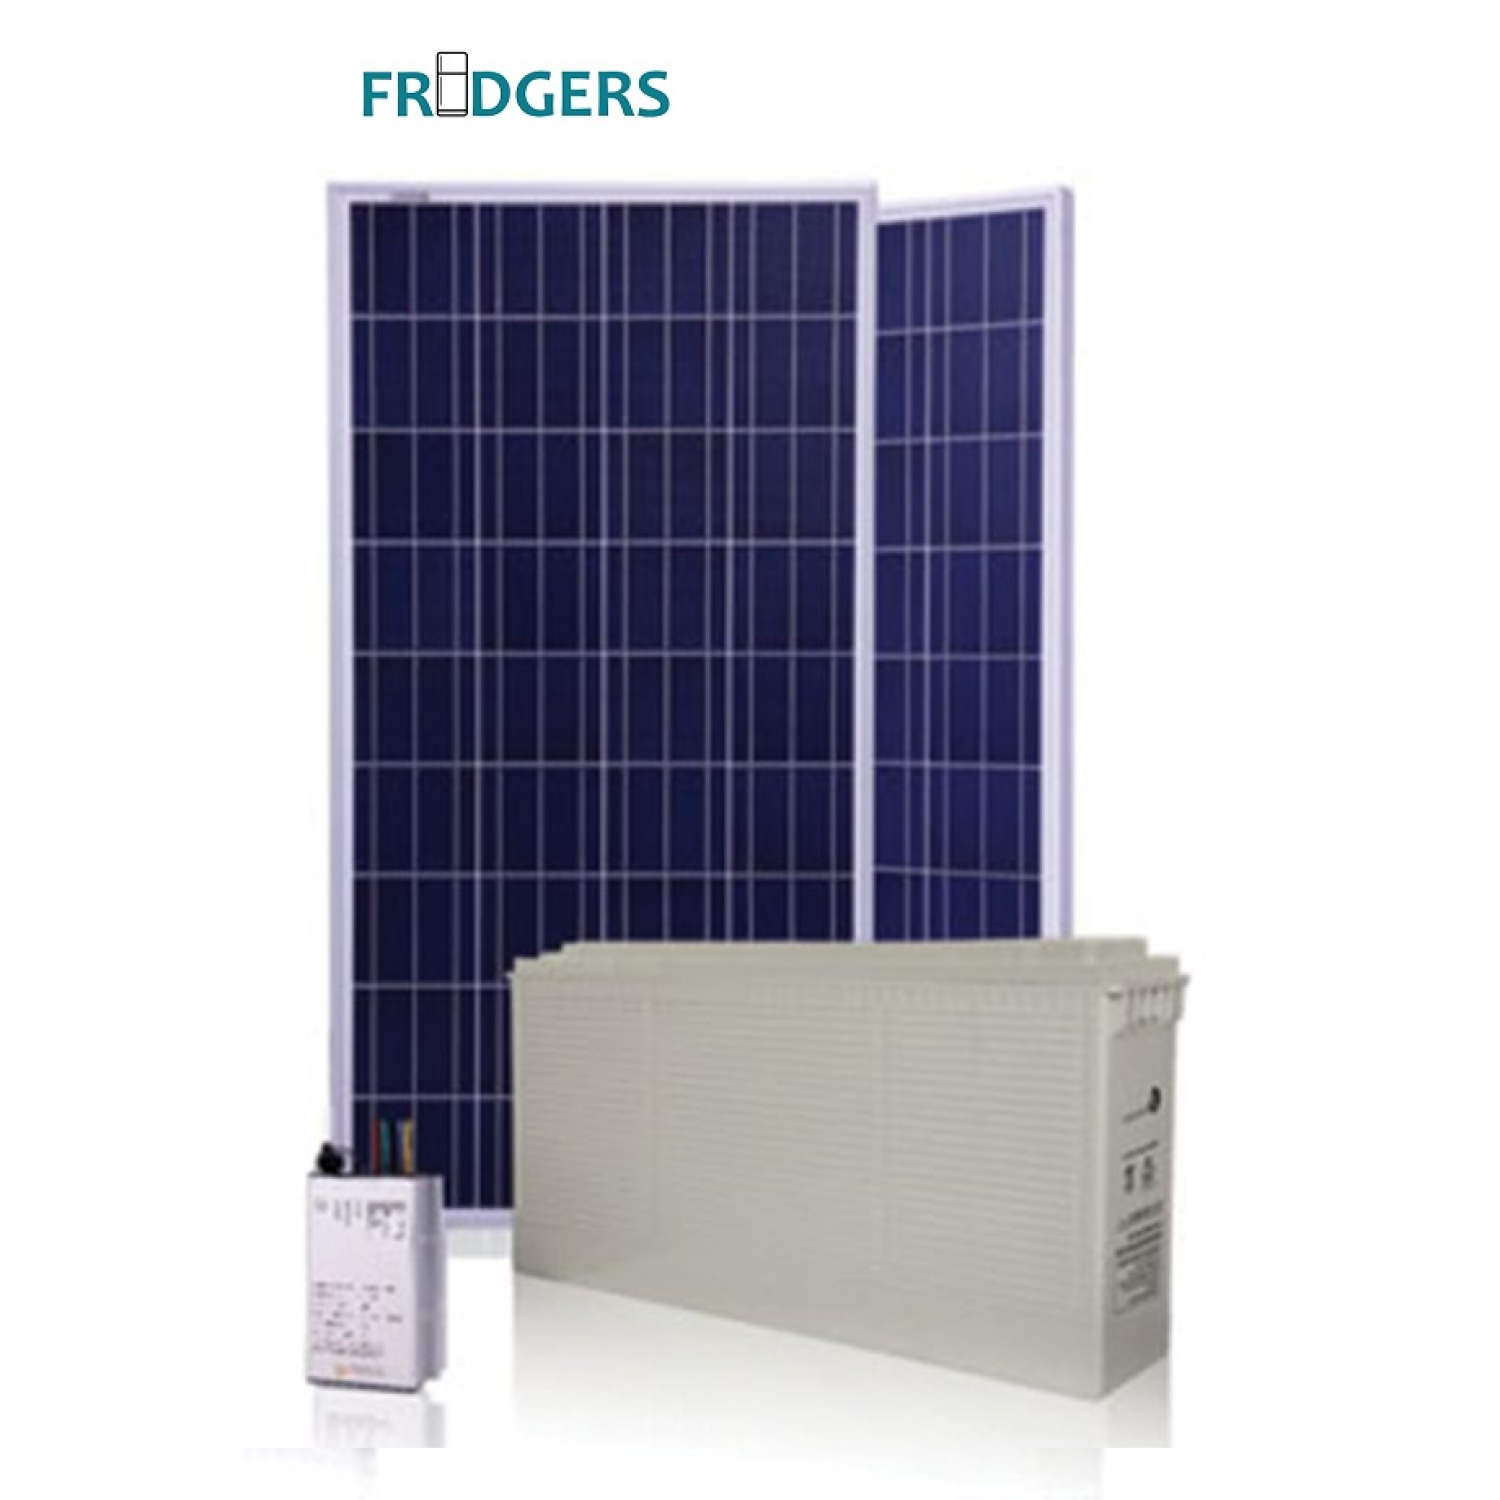 12V Buzdolabı Güneş Enerjisi Seti - Tam Gün (Tüm Modeller)